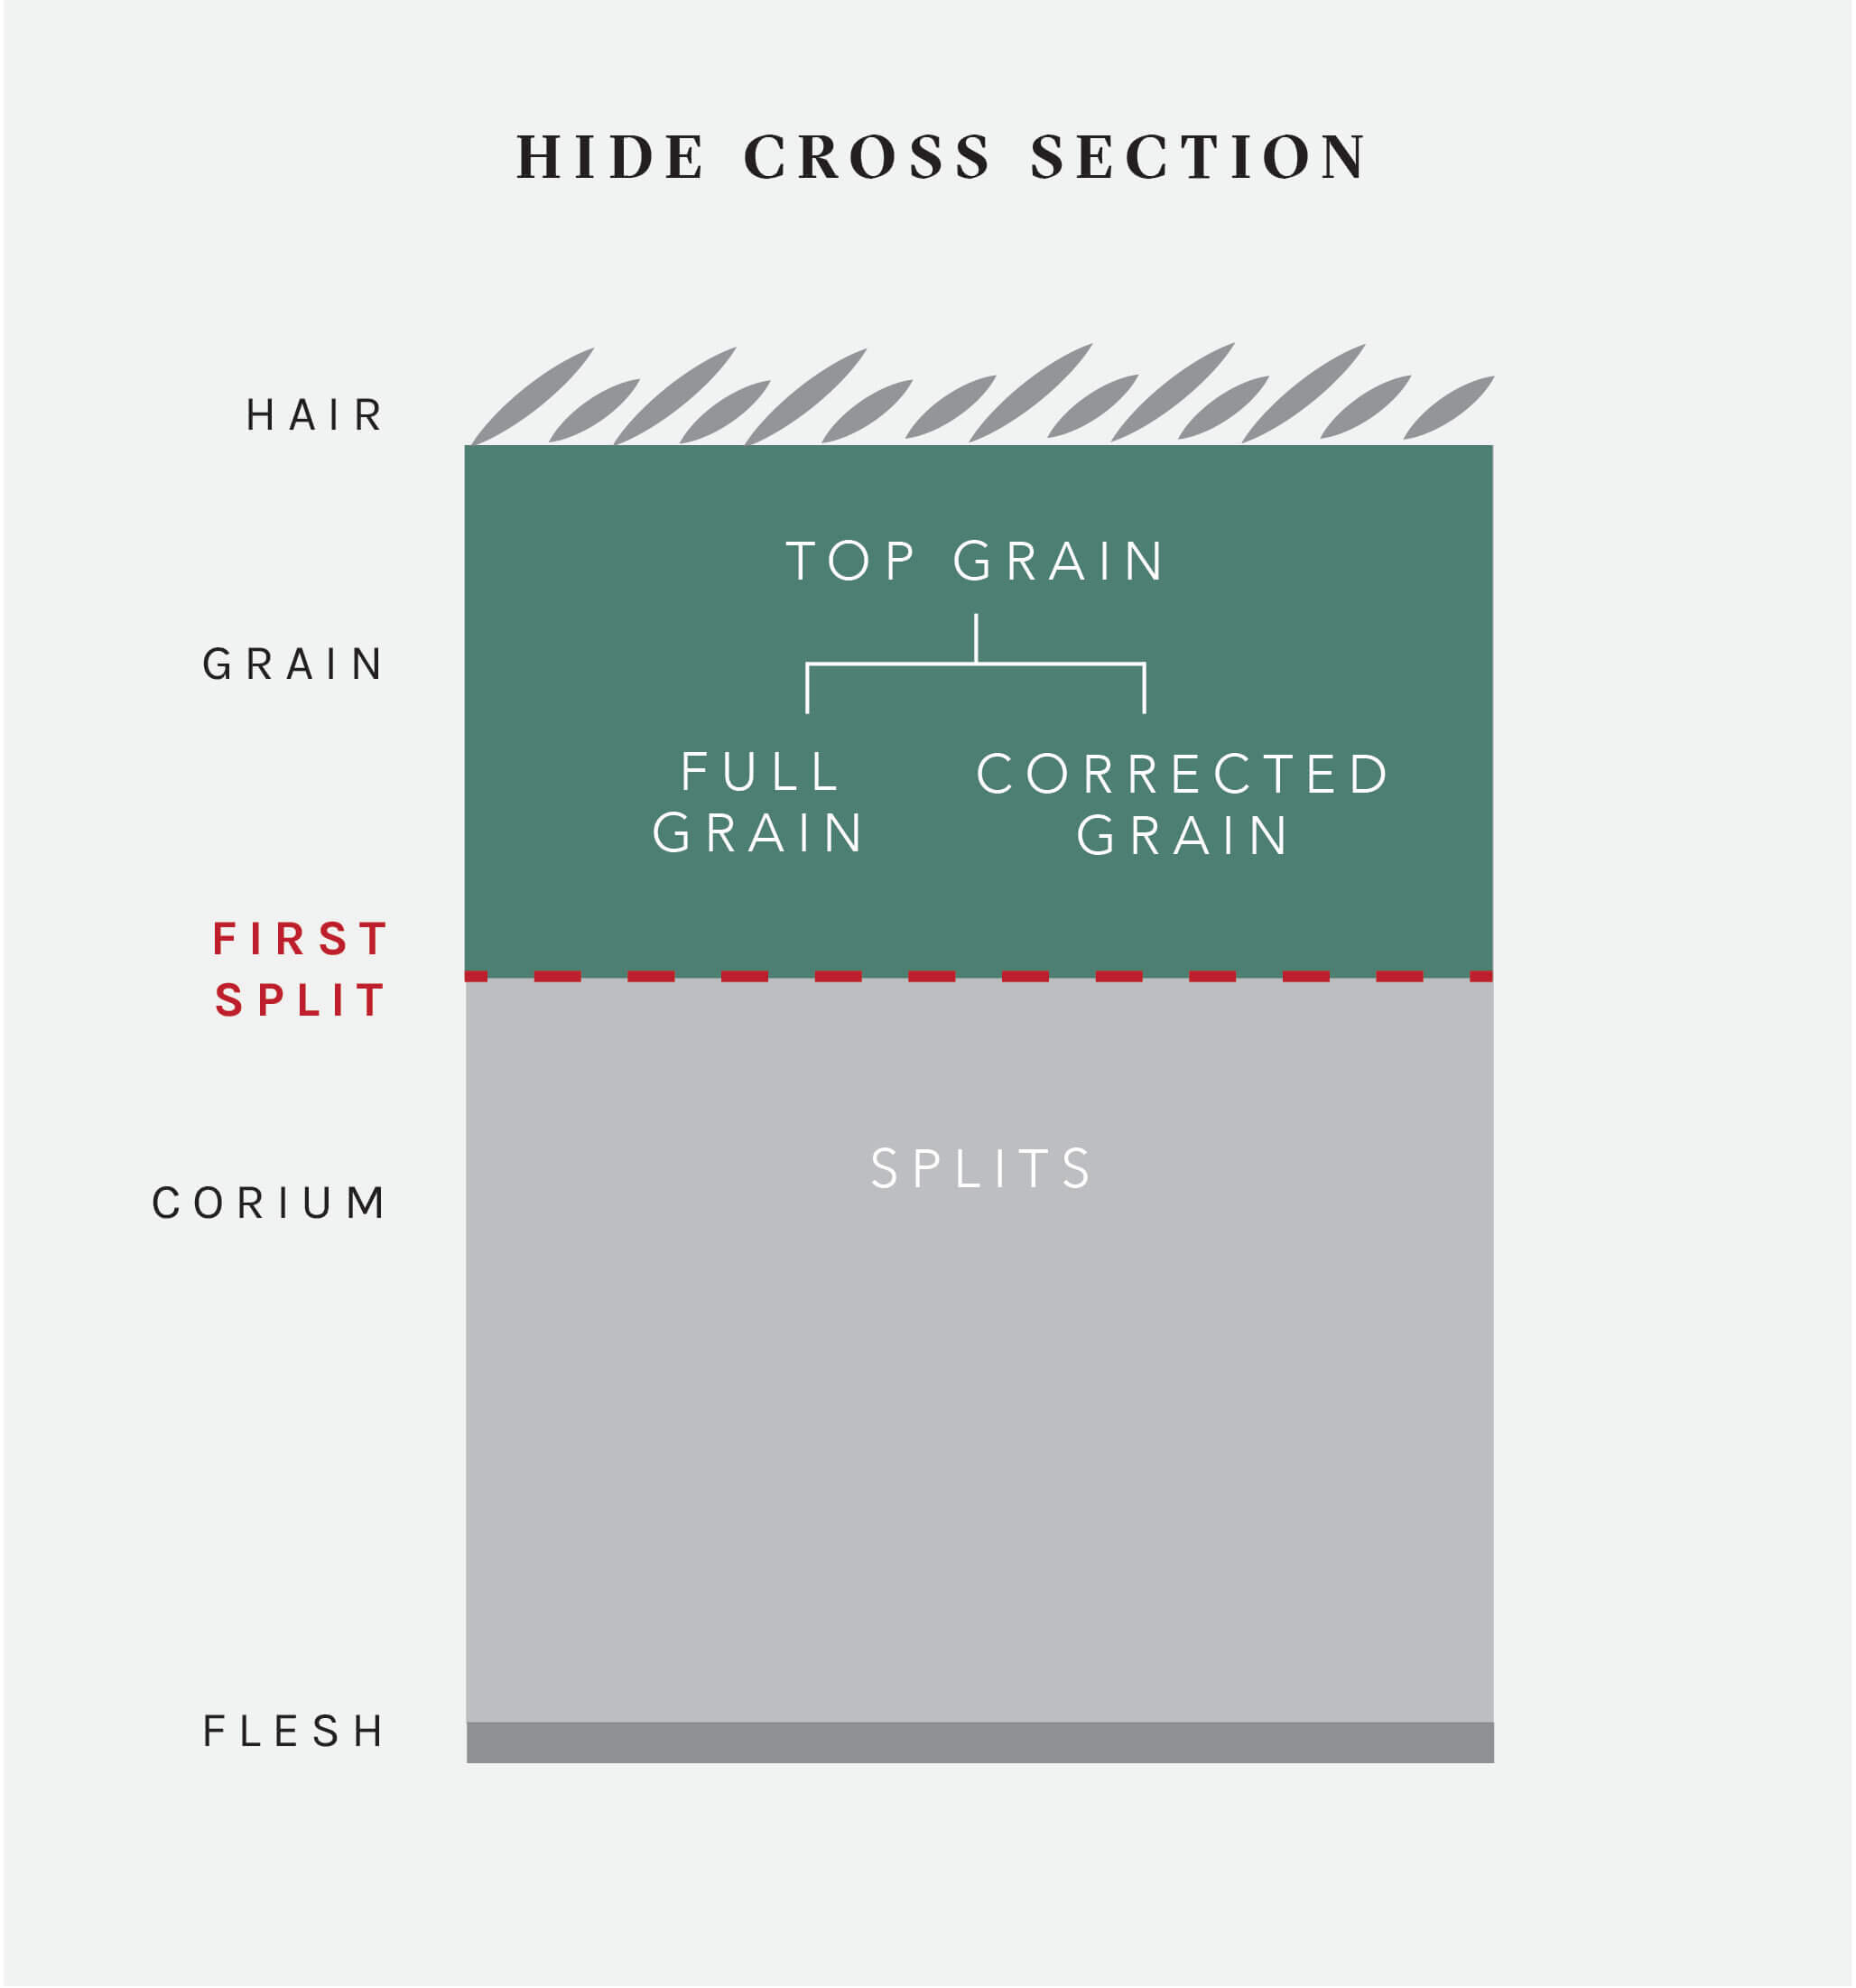 Understanding Leather Grains: Top Grain, Full Grain, Corrected